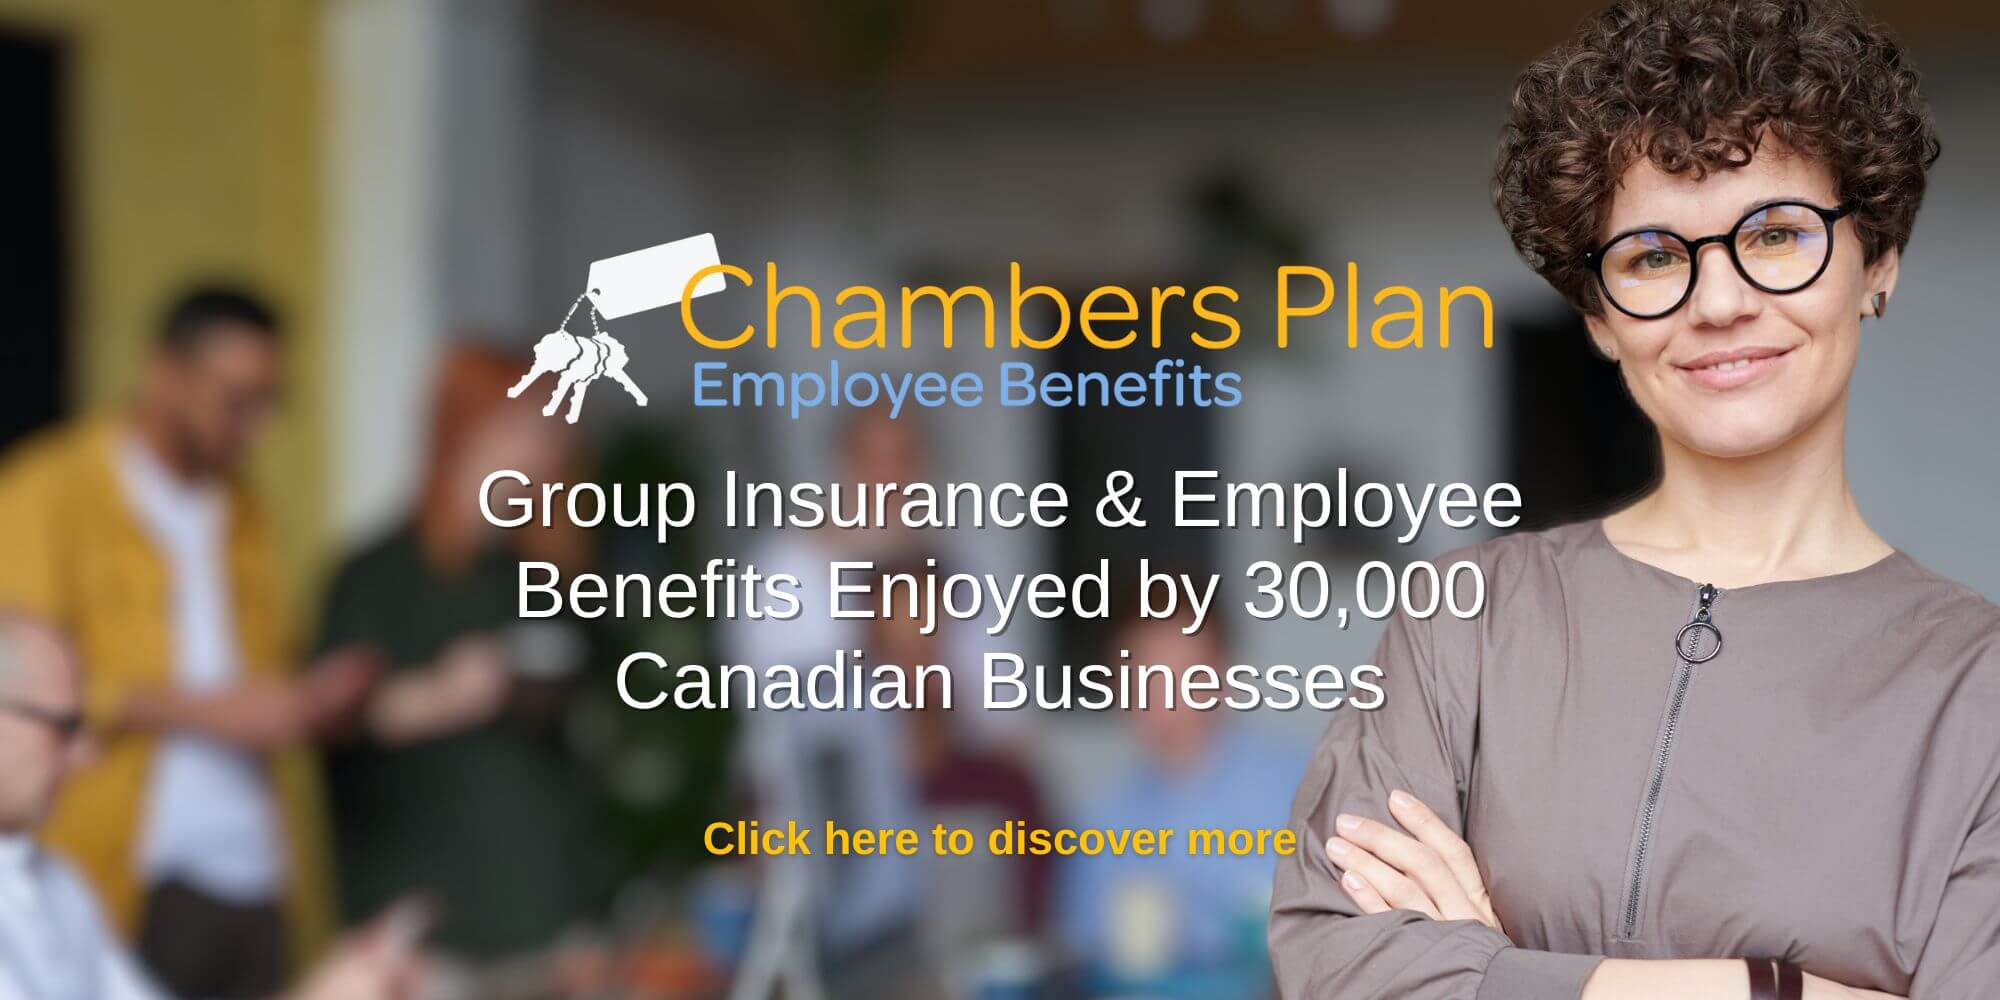 Chambers Plan - Employee Benefits